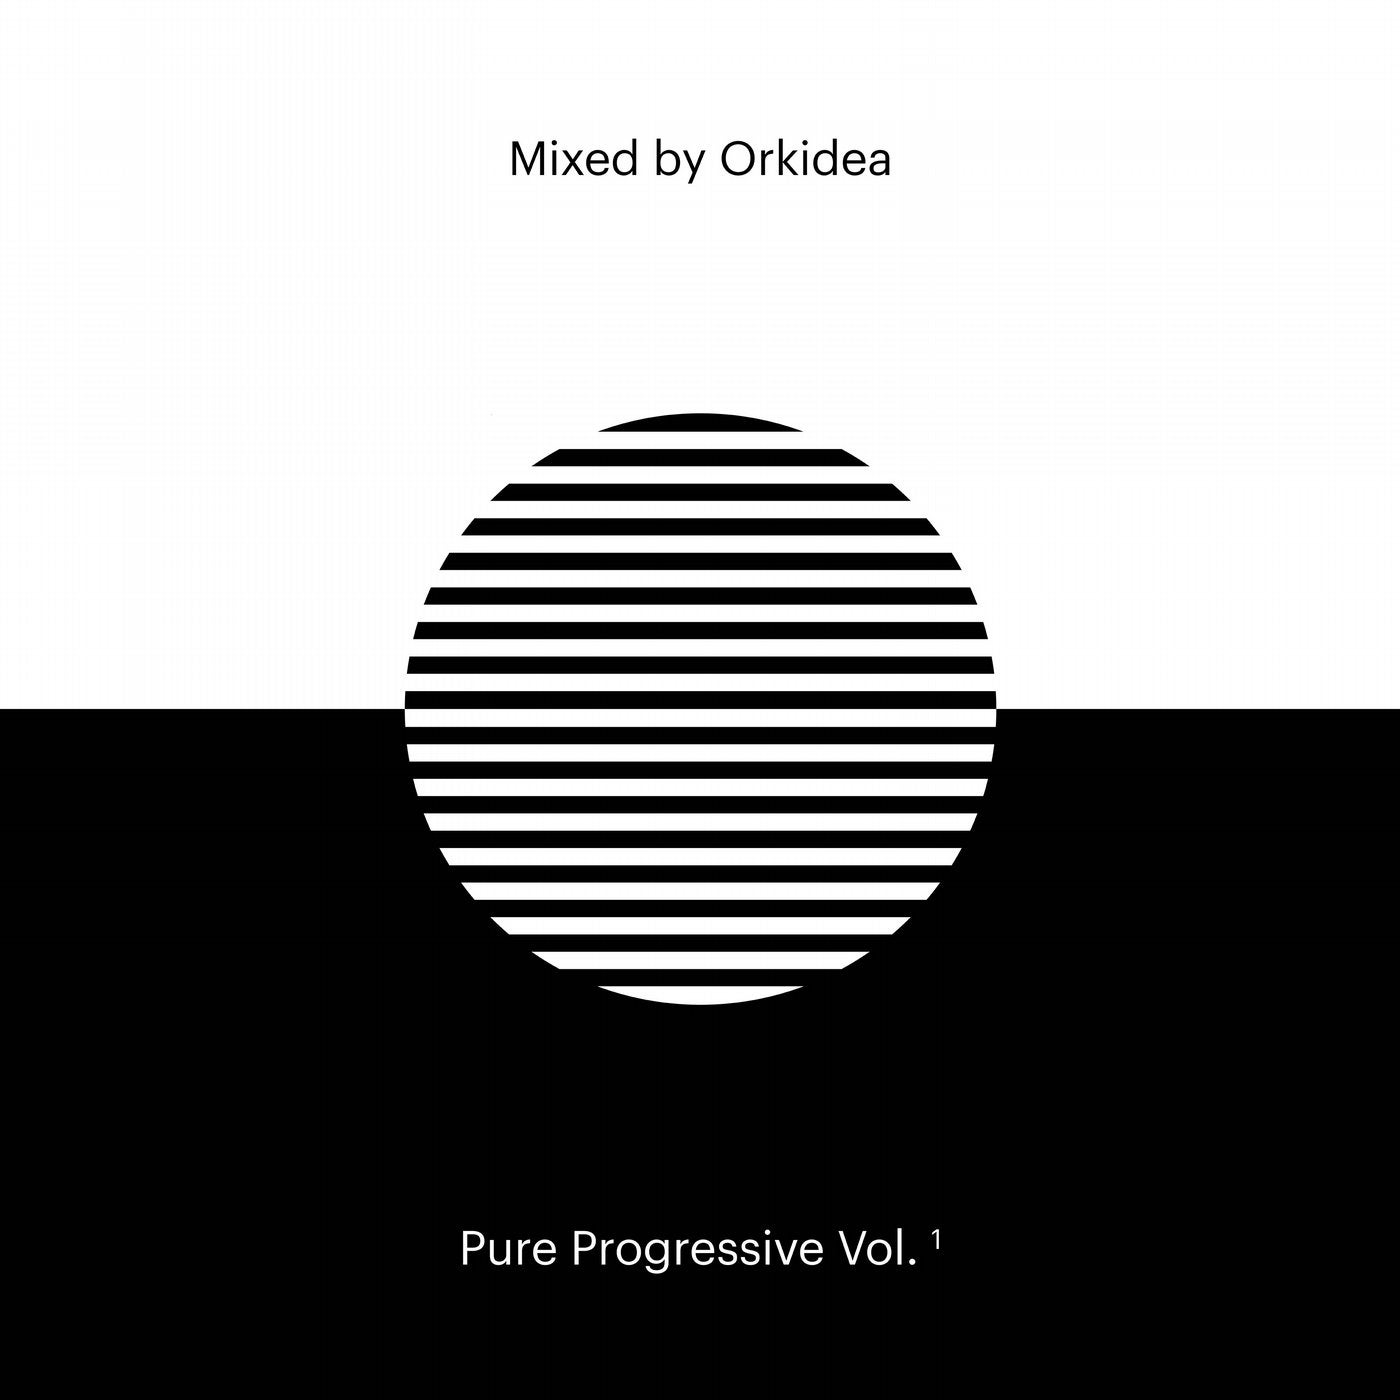 Pure Progressive Vol. 1 mixed by Orkidea